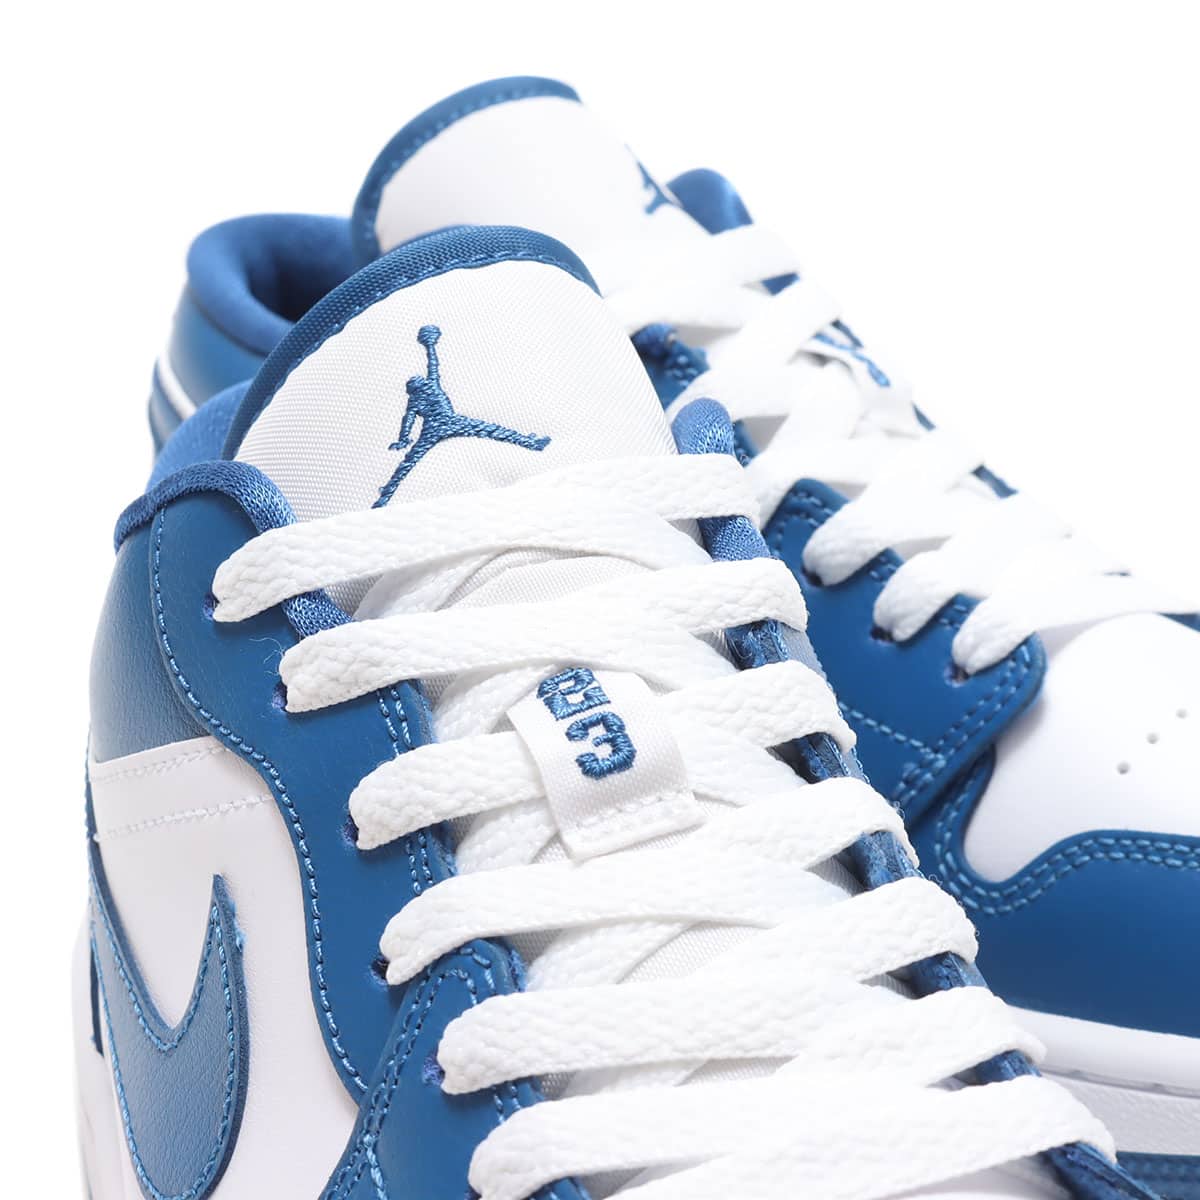 Nike WMNS Air Jordan 1 Low "Marina Blue"